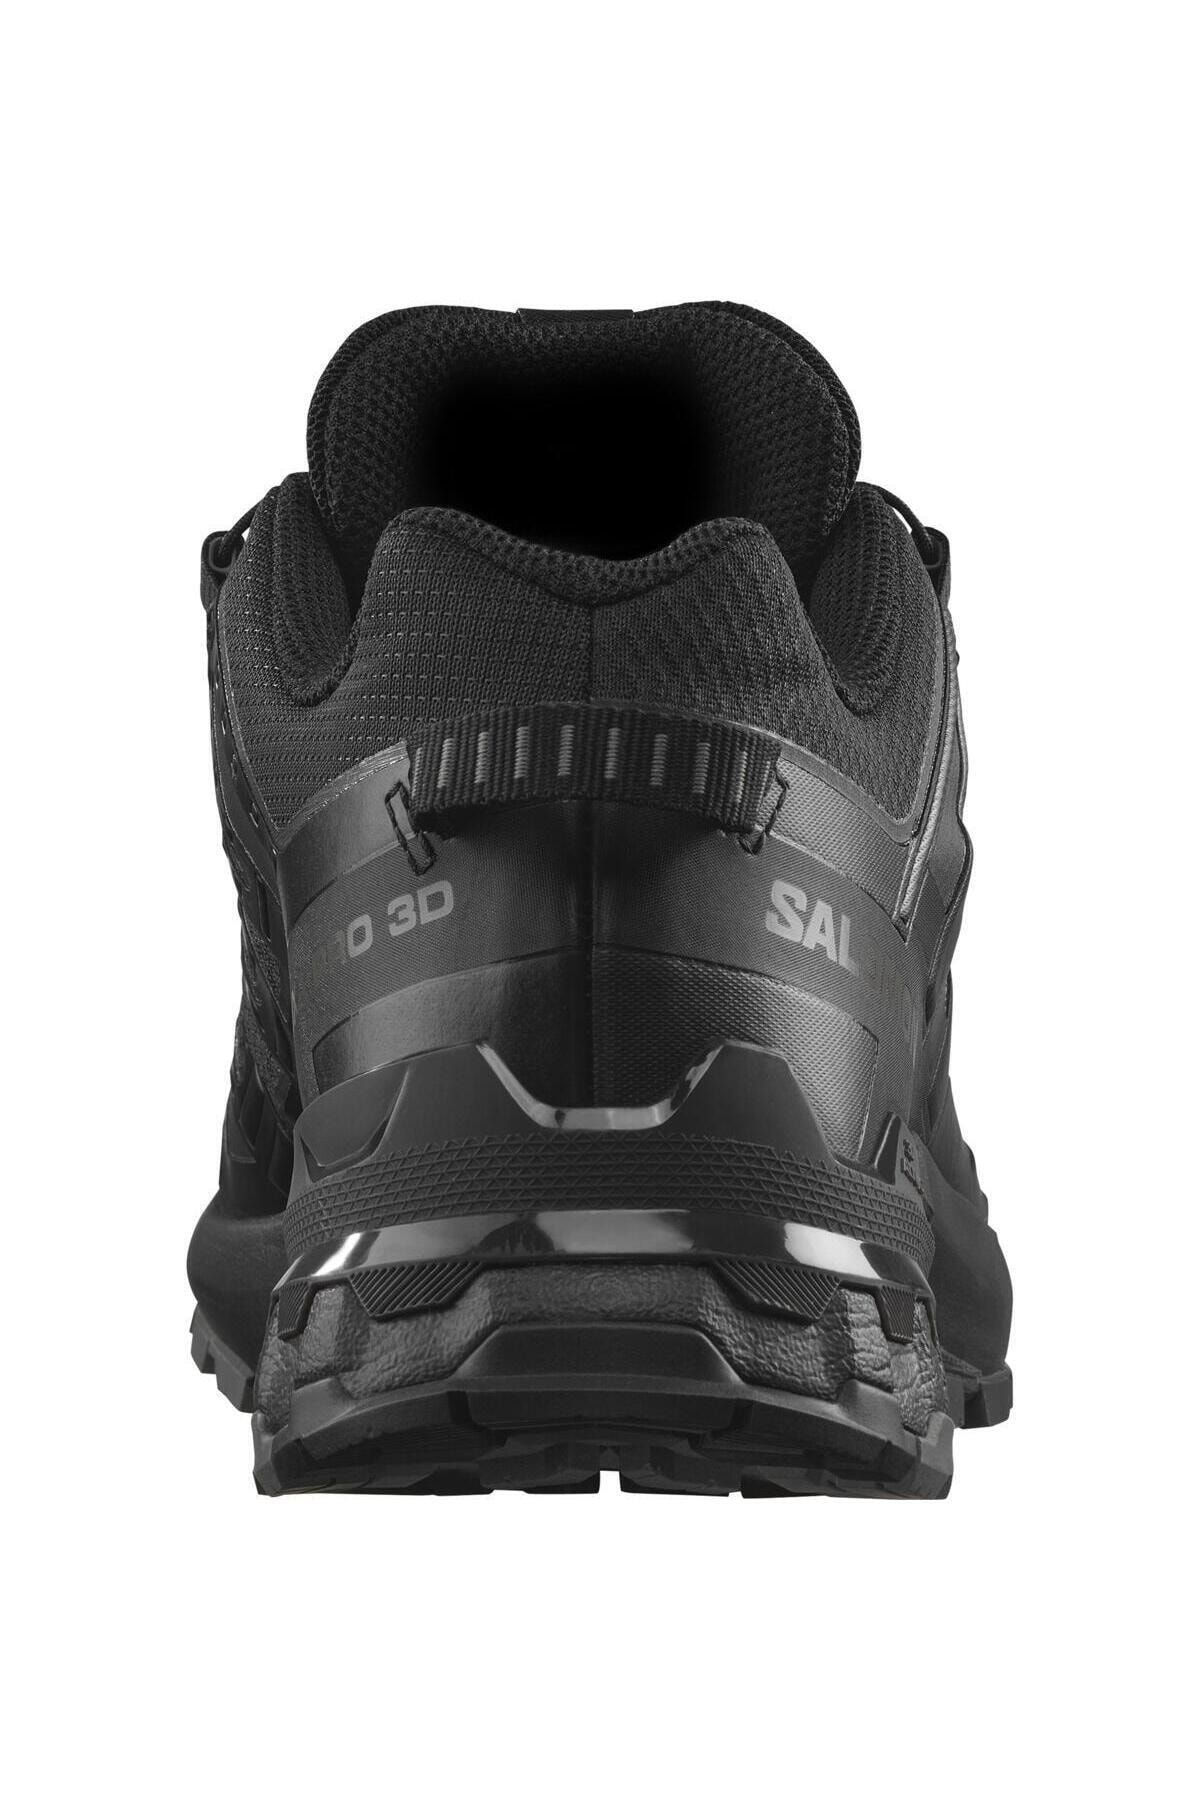 کفش دویدن و تریل زنانه Xa Pro 3d V9 Gtx سالامون Salomon بوفه 7004